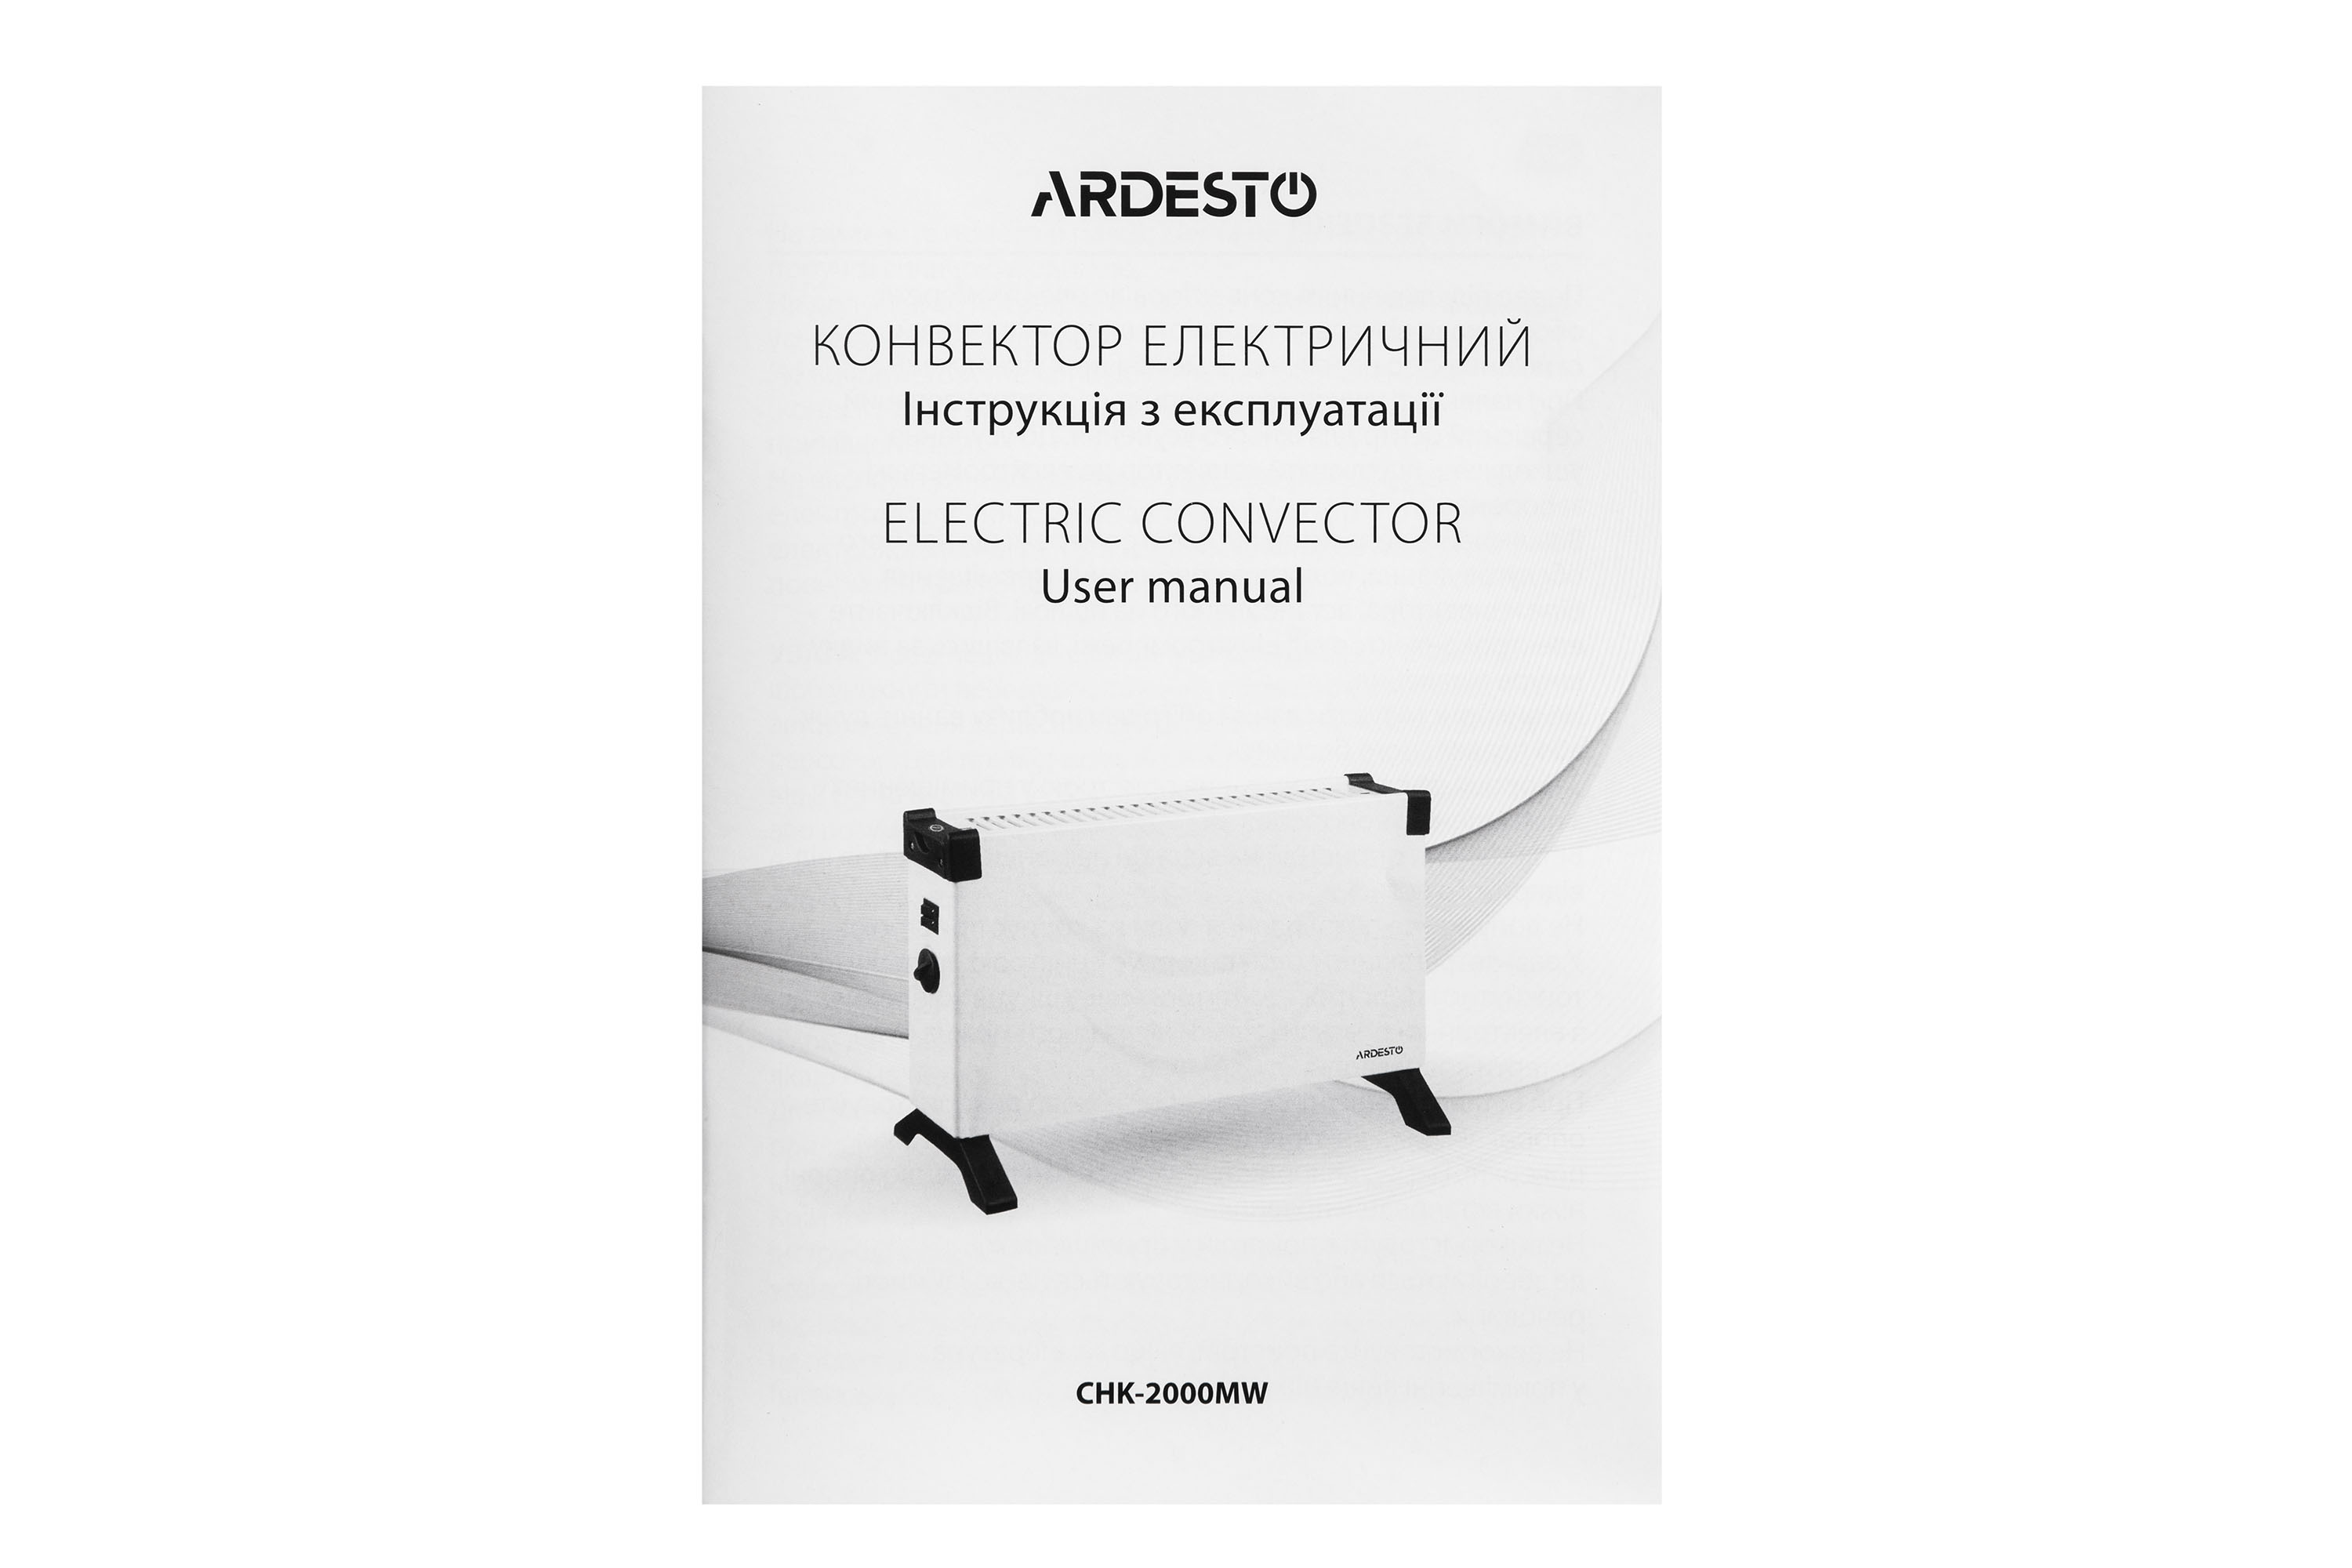 Электрический конвектор Ardesto CHK-2000MW внешний вид - фото 9